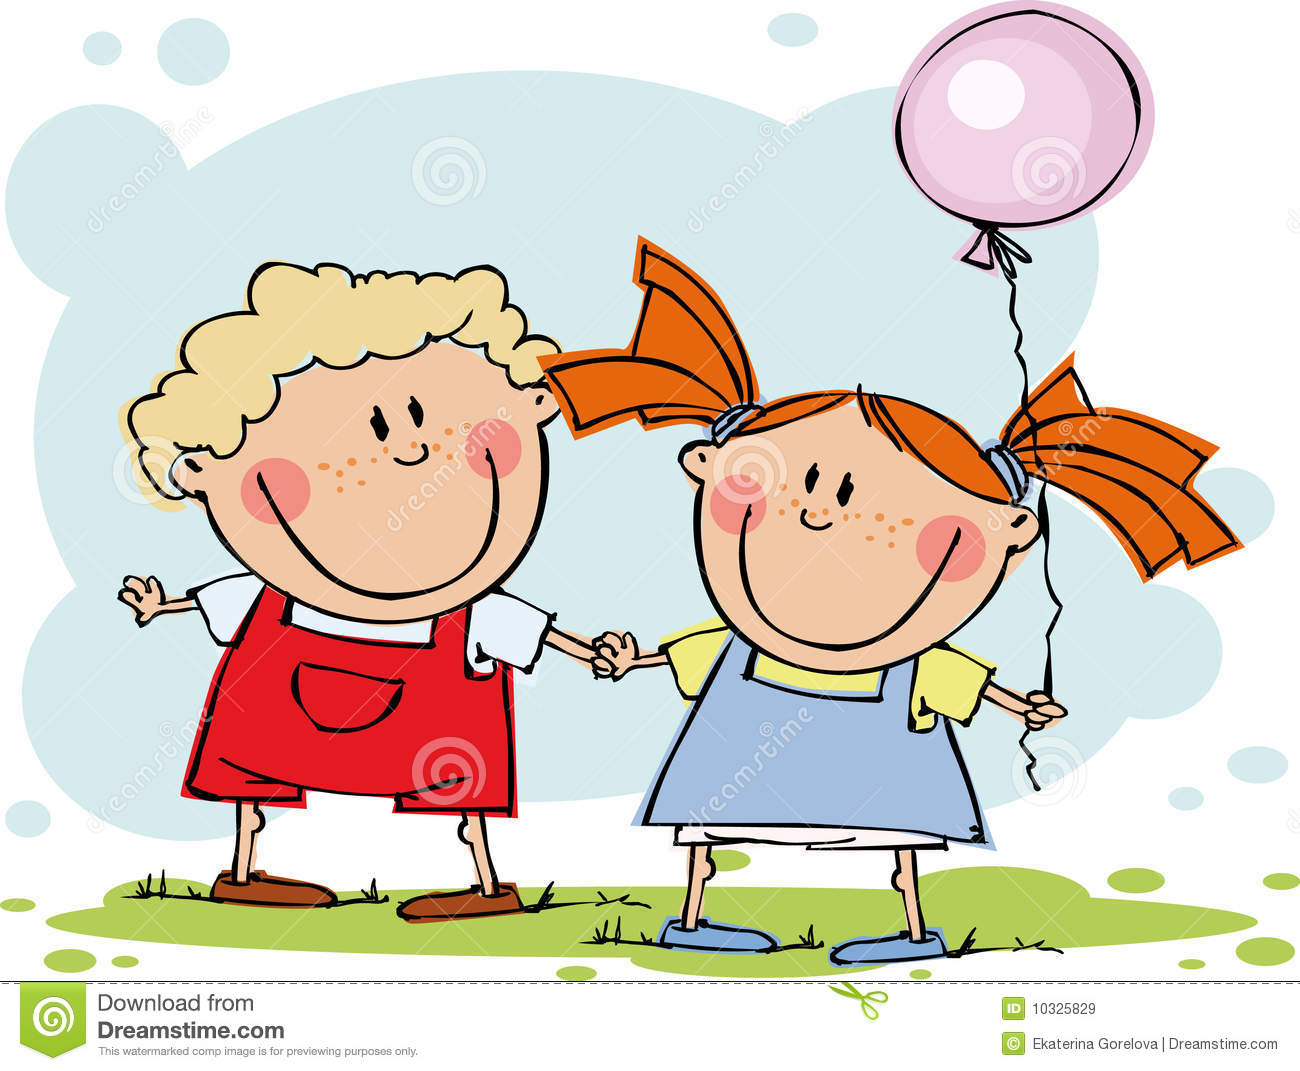 Lustige Kinder Mit Ballon Vektor Abbildung. Illustration Von Lustig verwandt mit Bilder Kinder Essen Comic